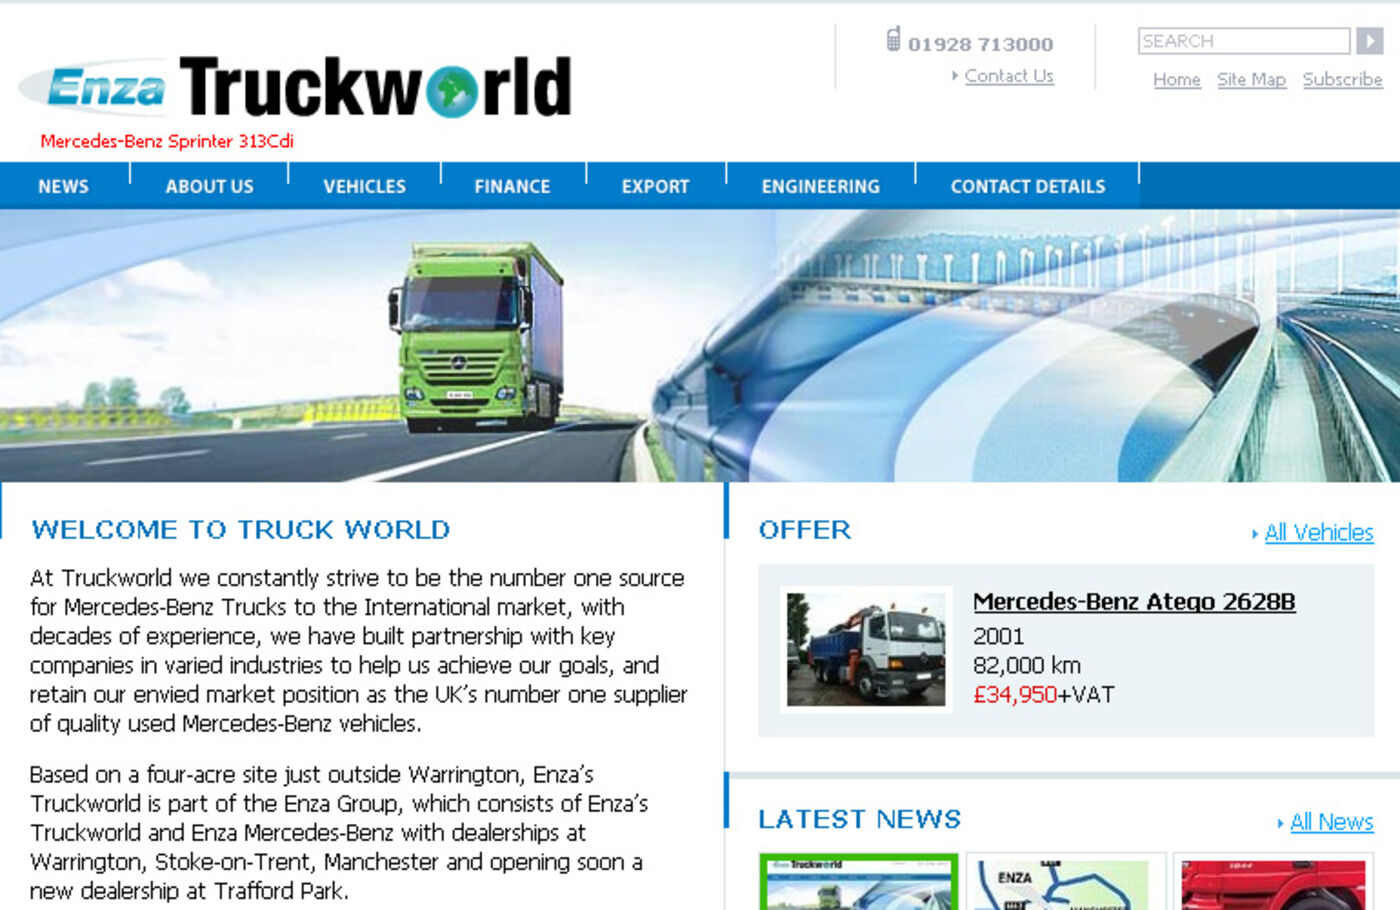 Enza's Truck World Homepage header